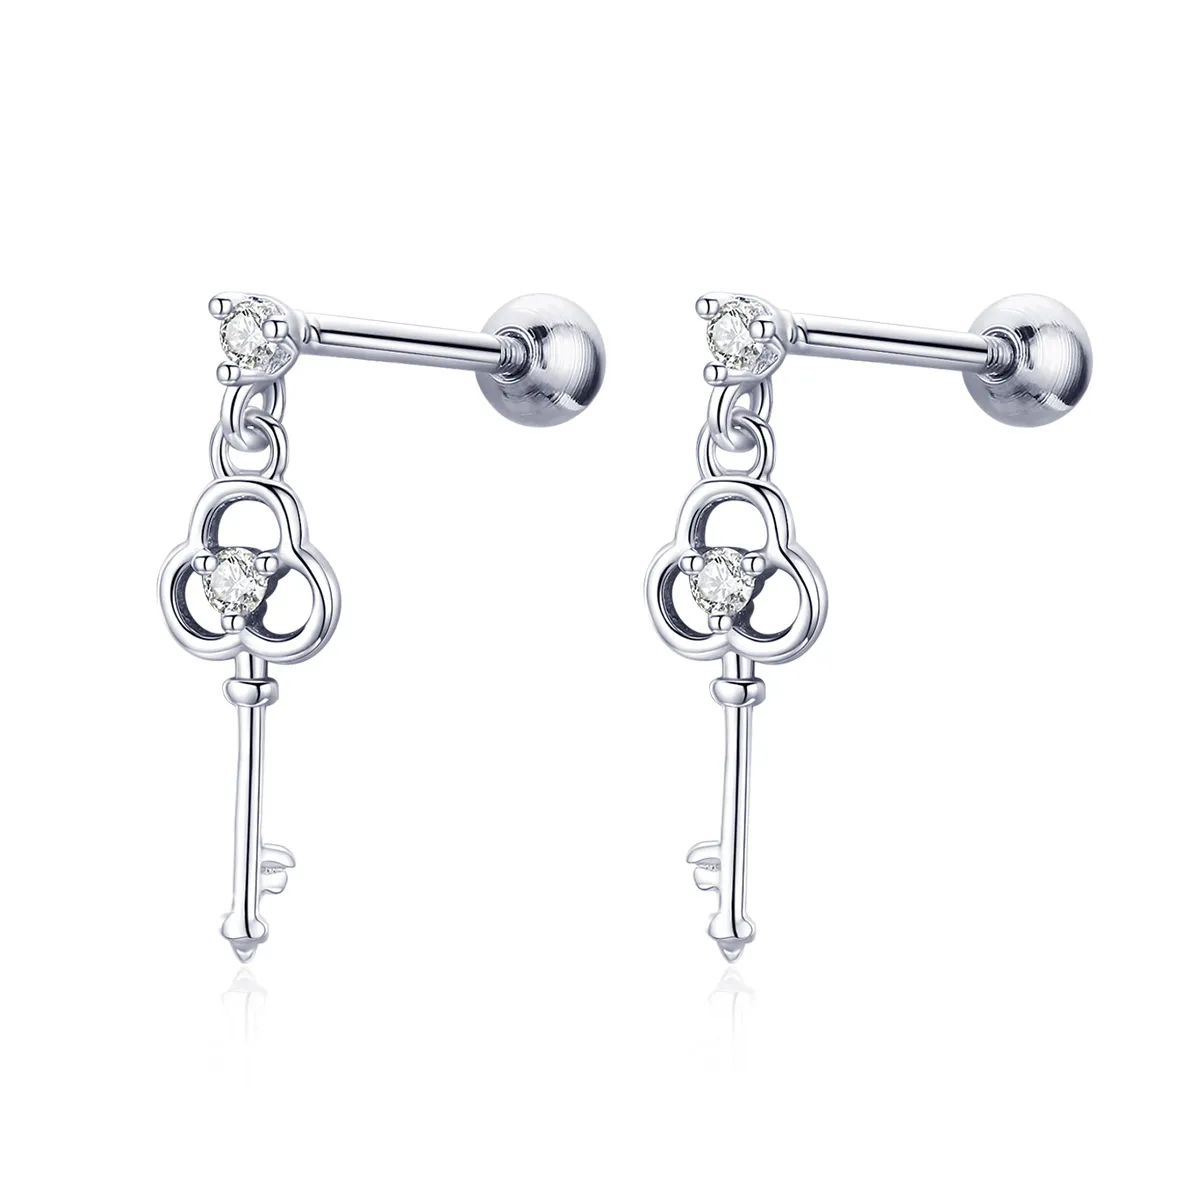 Pandora Style Silver Key of Heart Hanging Earrings - SCE539